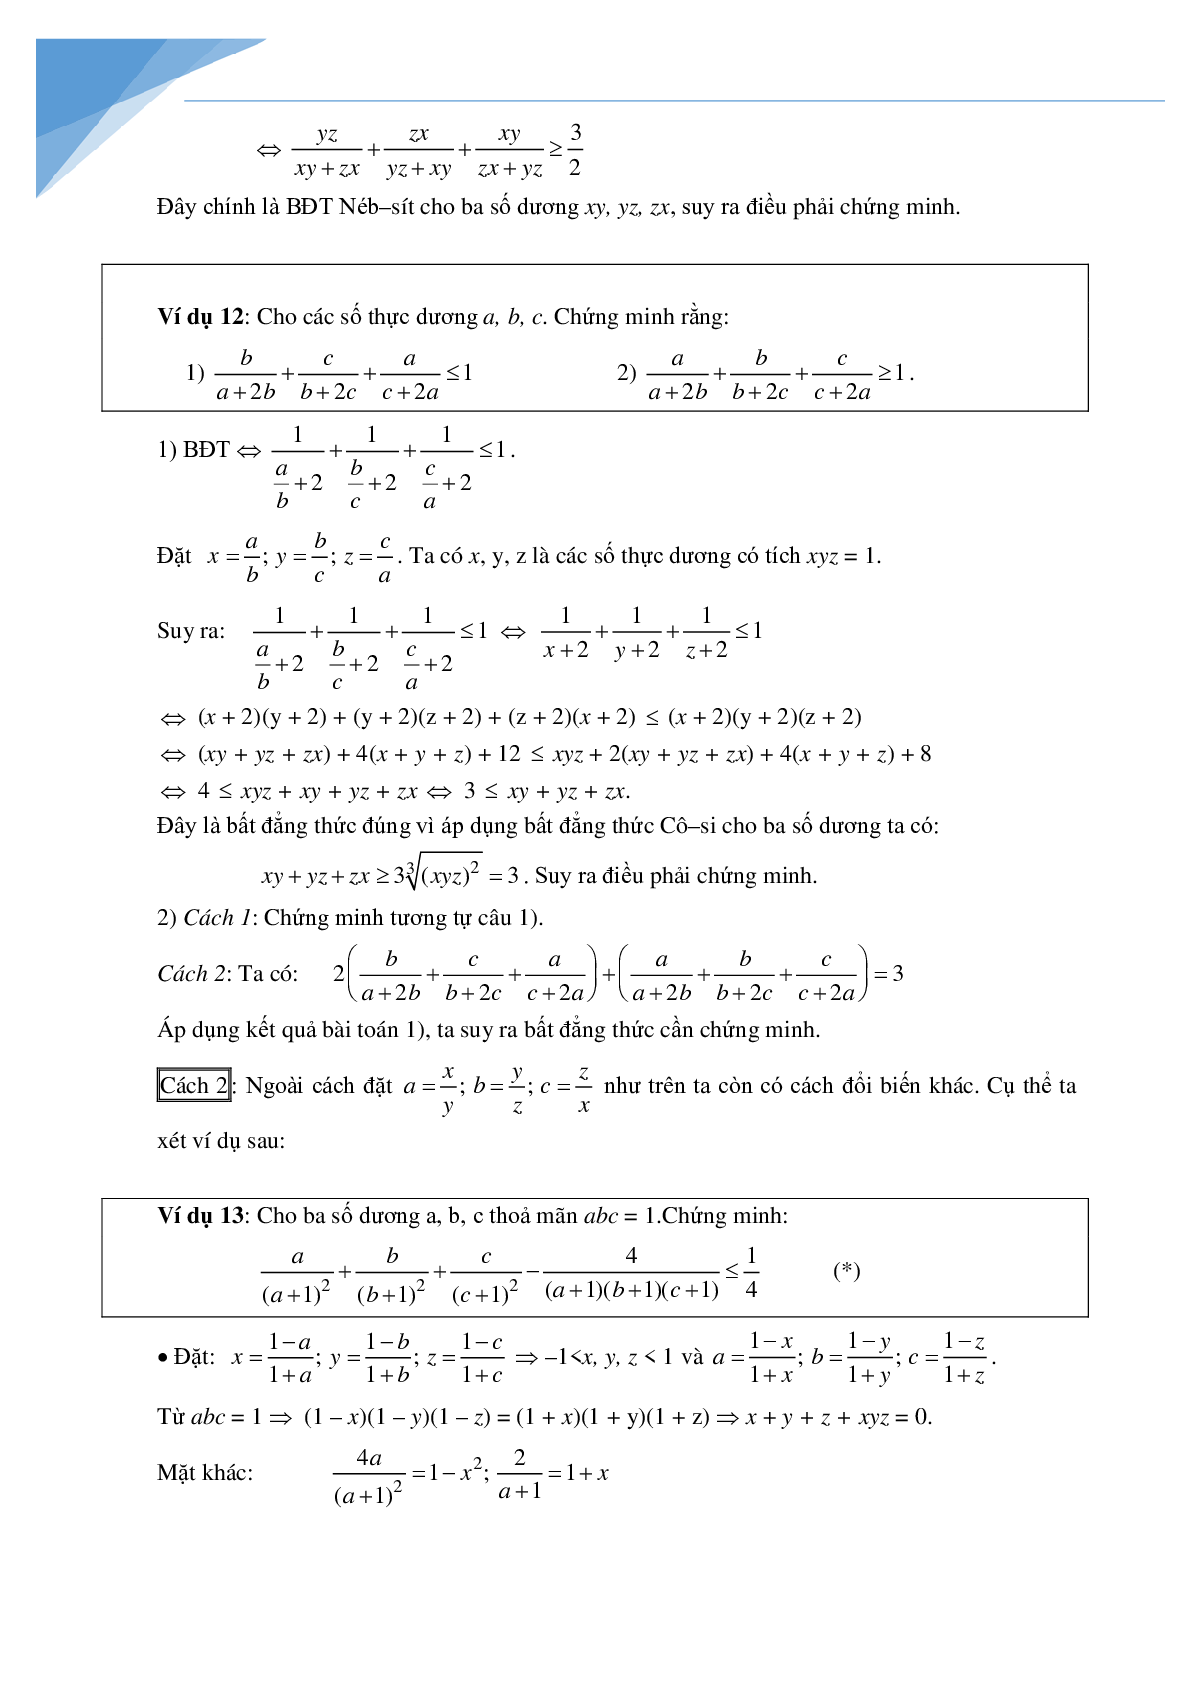 Phương pháp đổi biến trong chứng minh bất đẳng thức (trang 4)